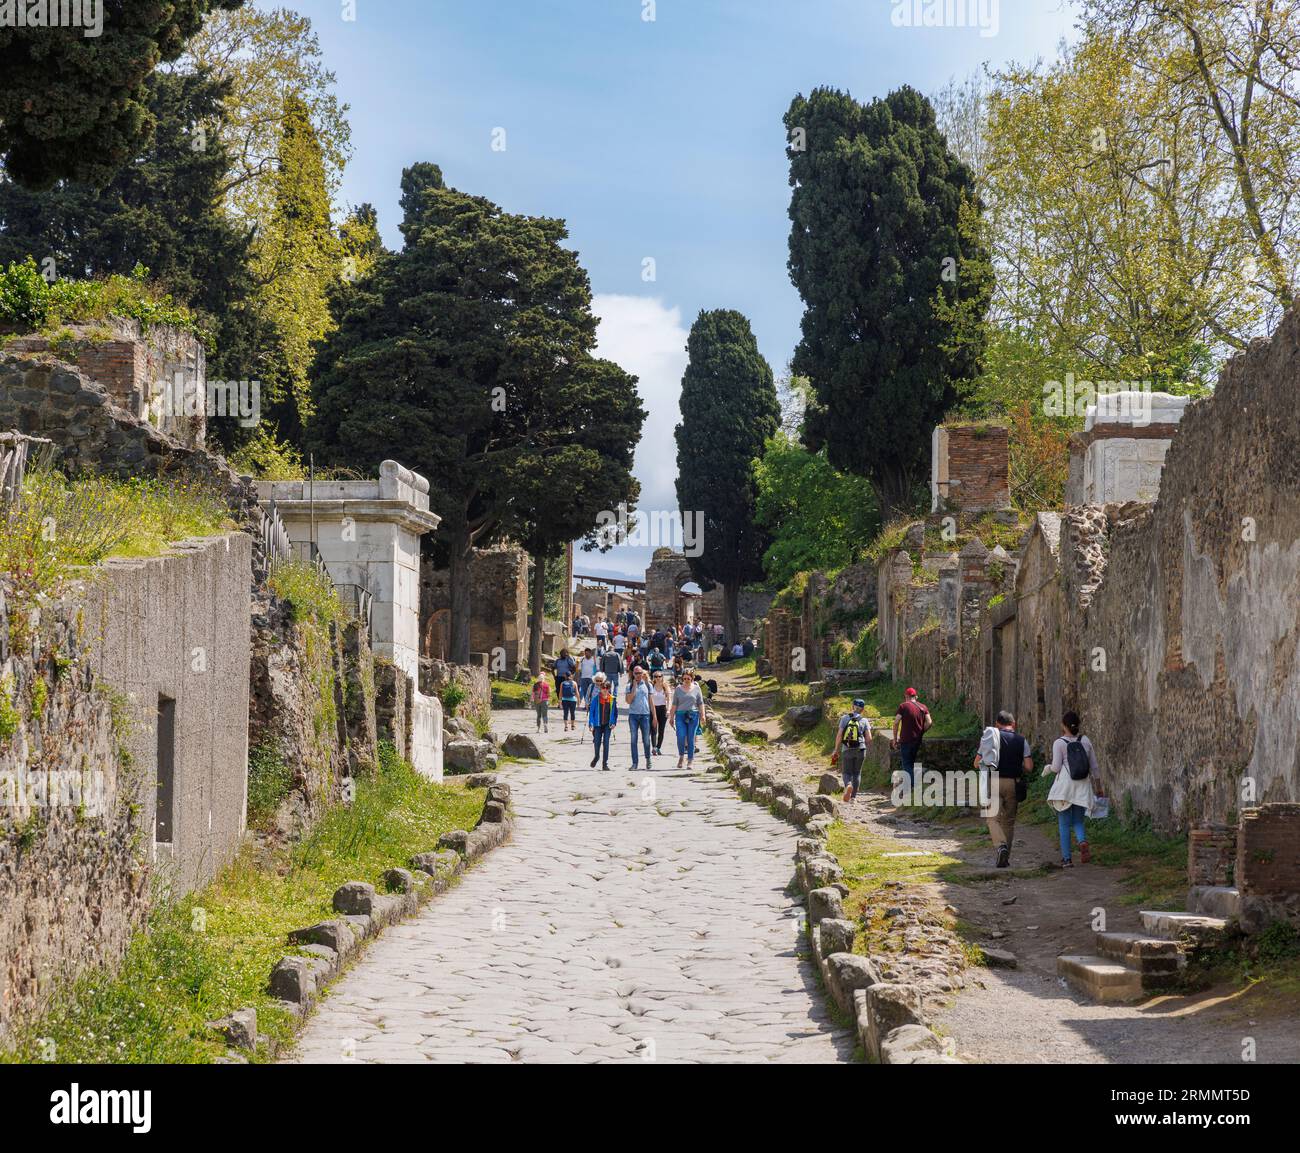 Archäologische Stätte Pompeji, Kampanien, Italien. Straßenszene mit Besuchern. Pompeji, Herculaneum und Torre Annunziata werden gemeinsam als U bezeichnet Stockfoto